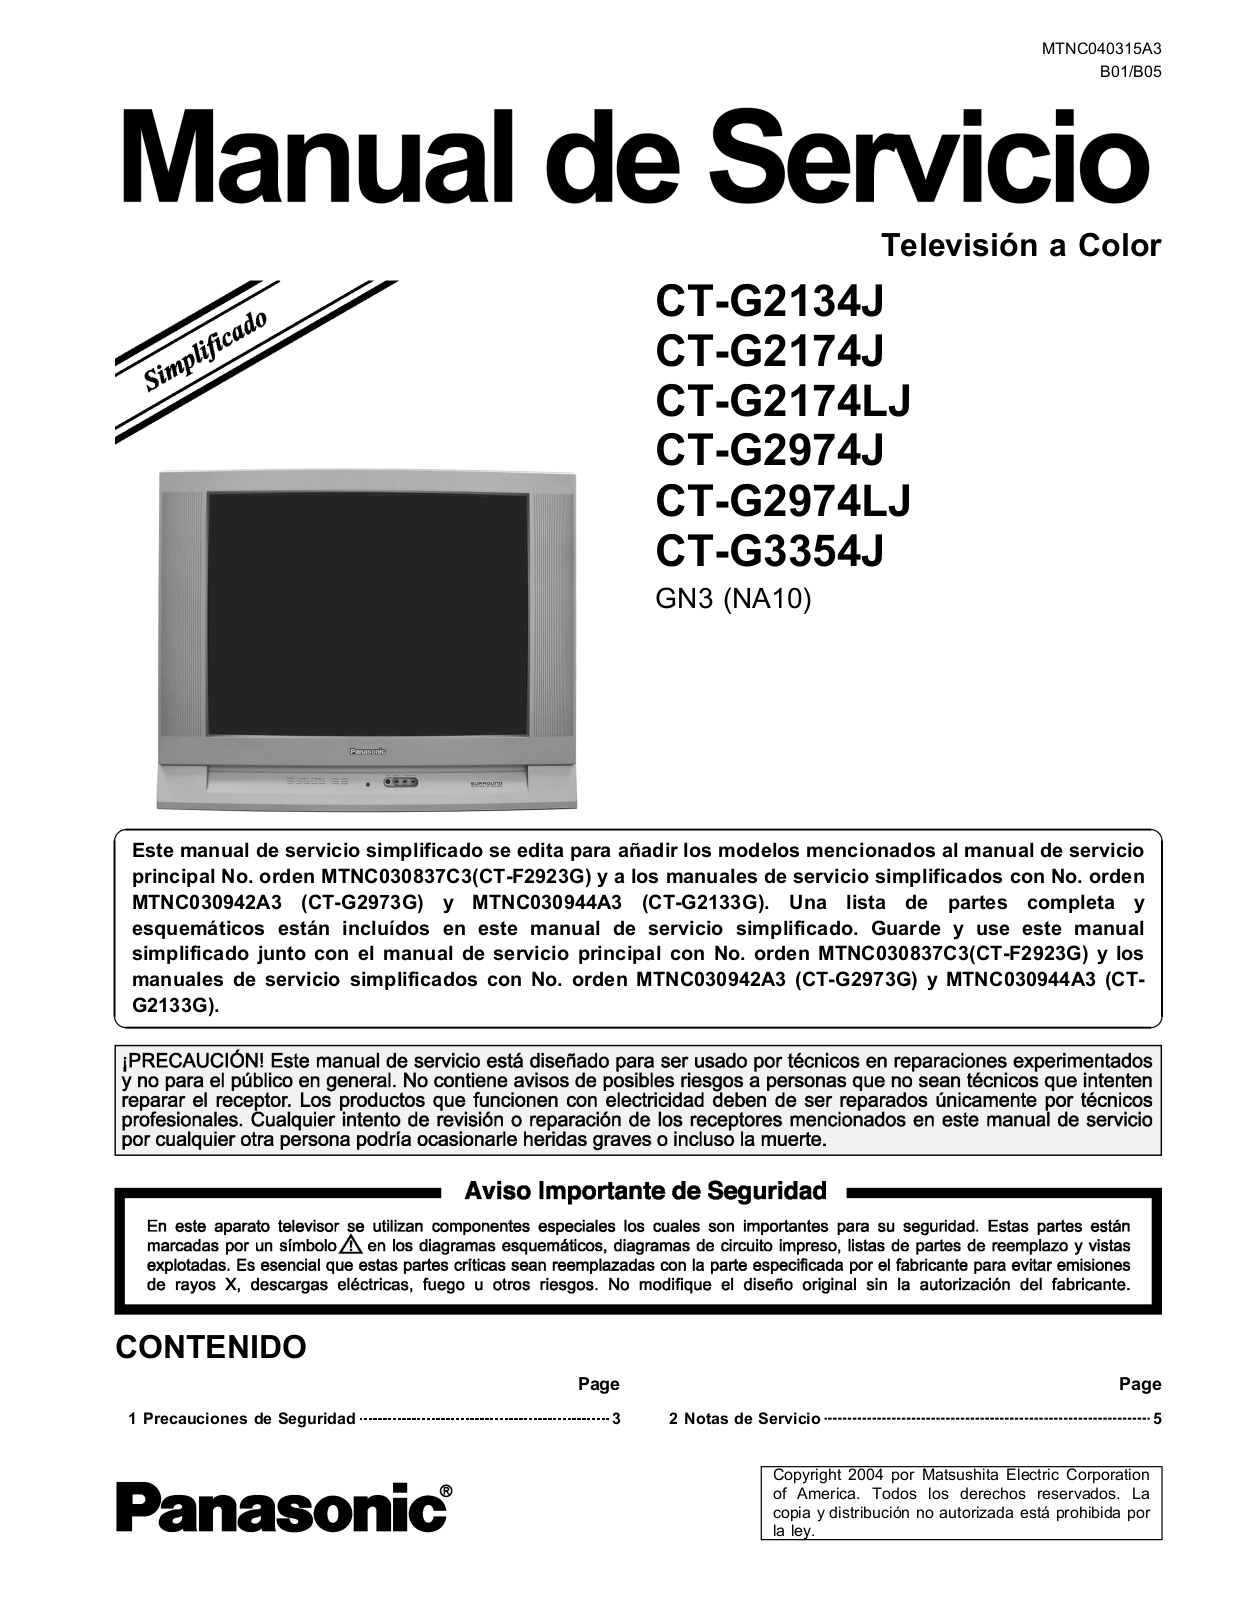 Panasonic CT-G2134J, CT-G2174J, CT-G2174LJ, CT-G2974J, CT-G2974LJ Diagram